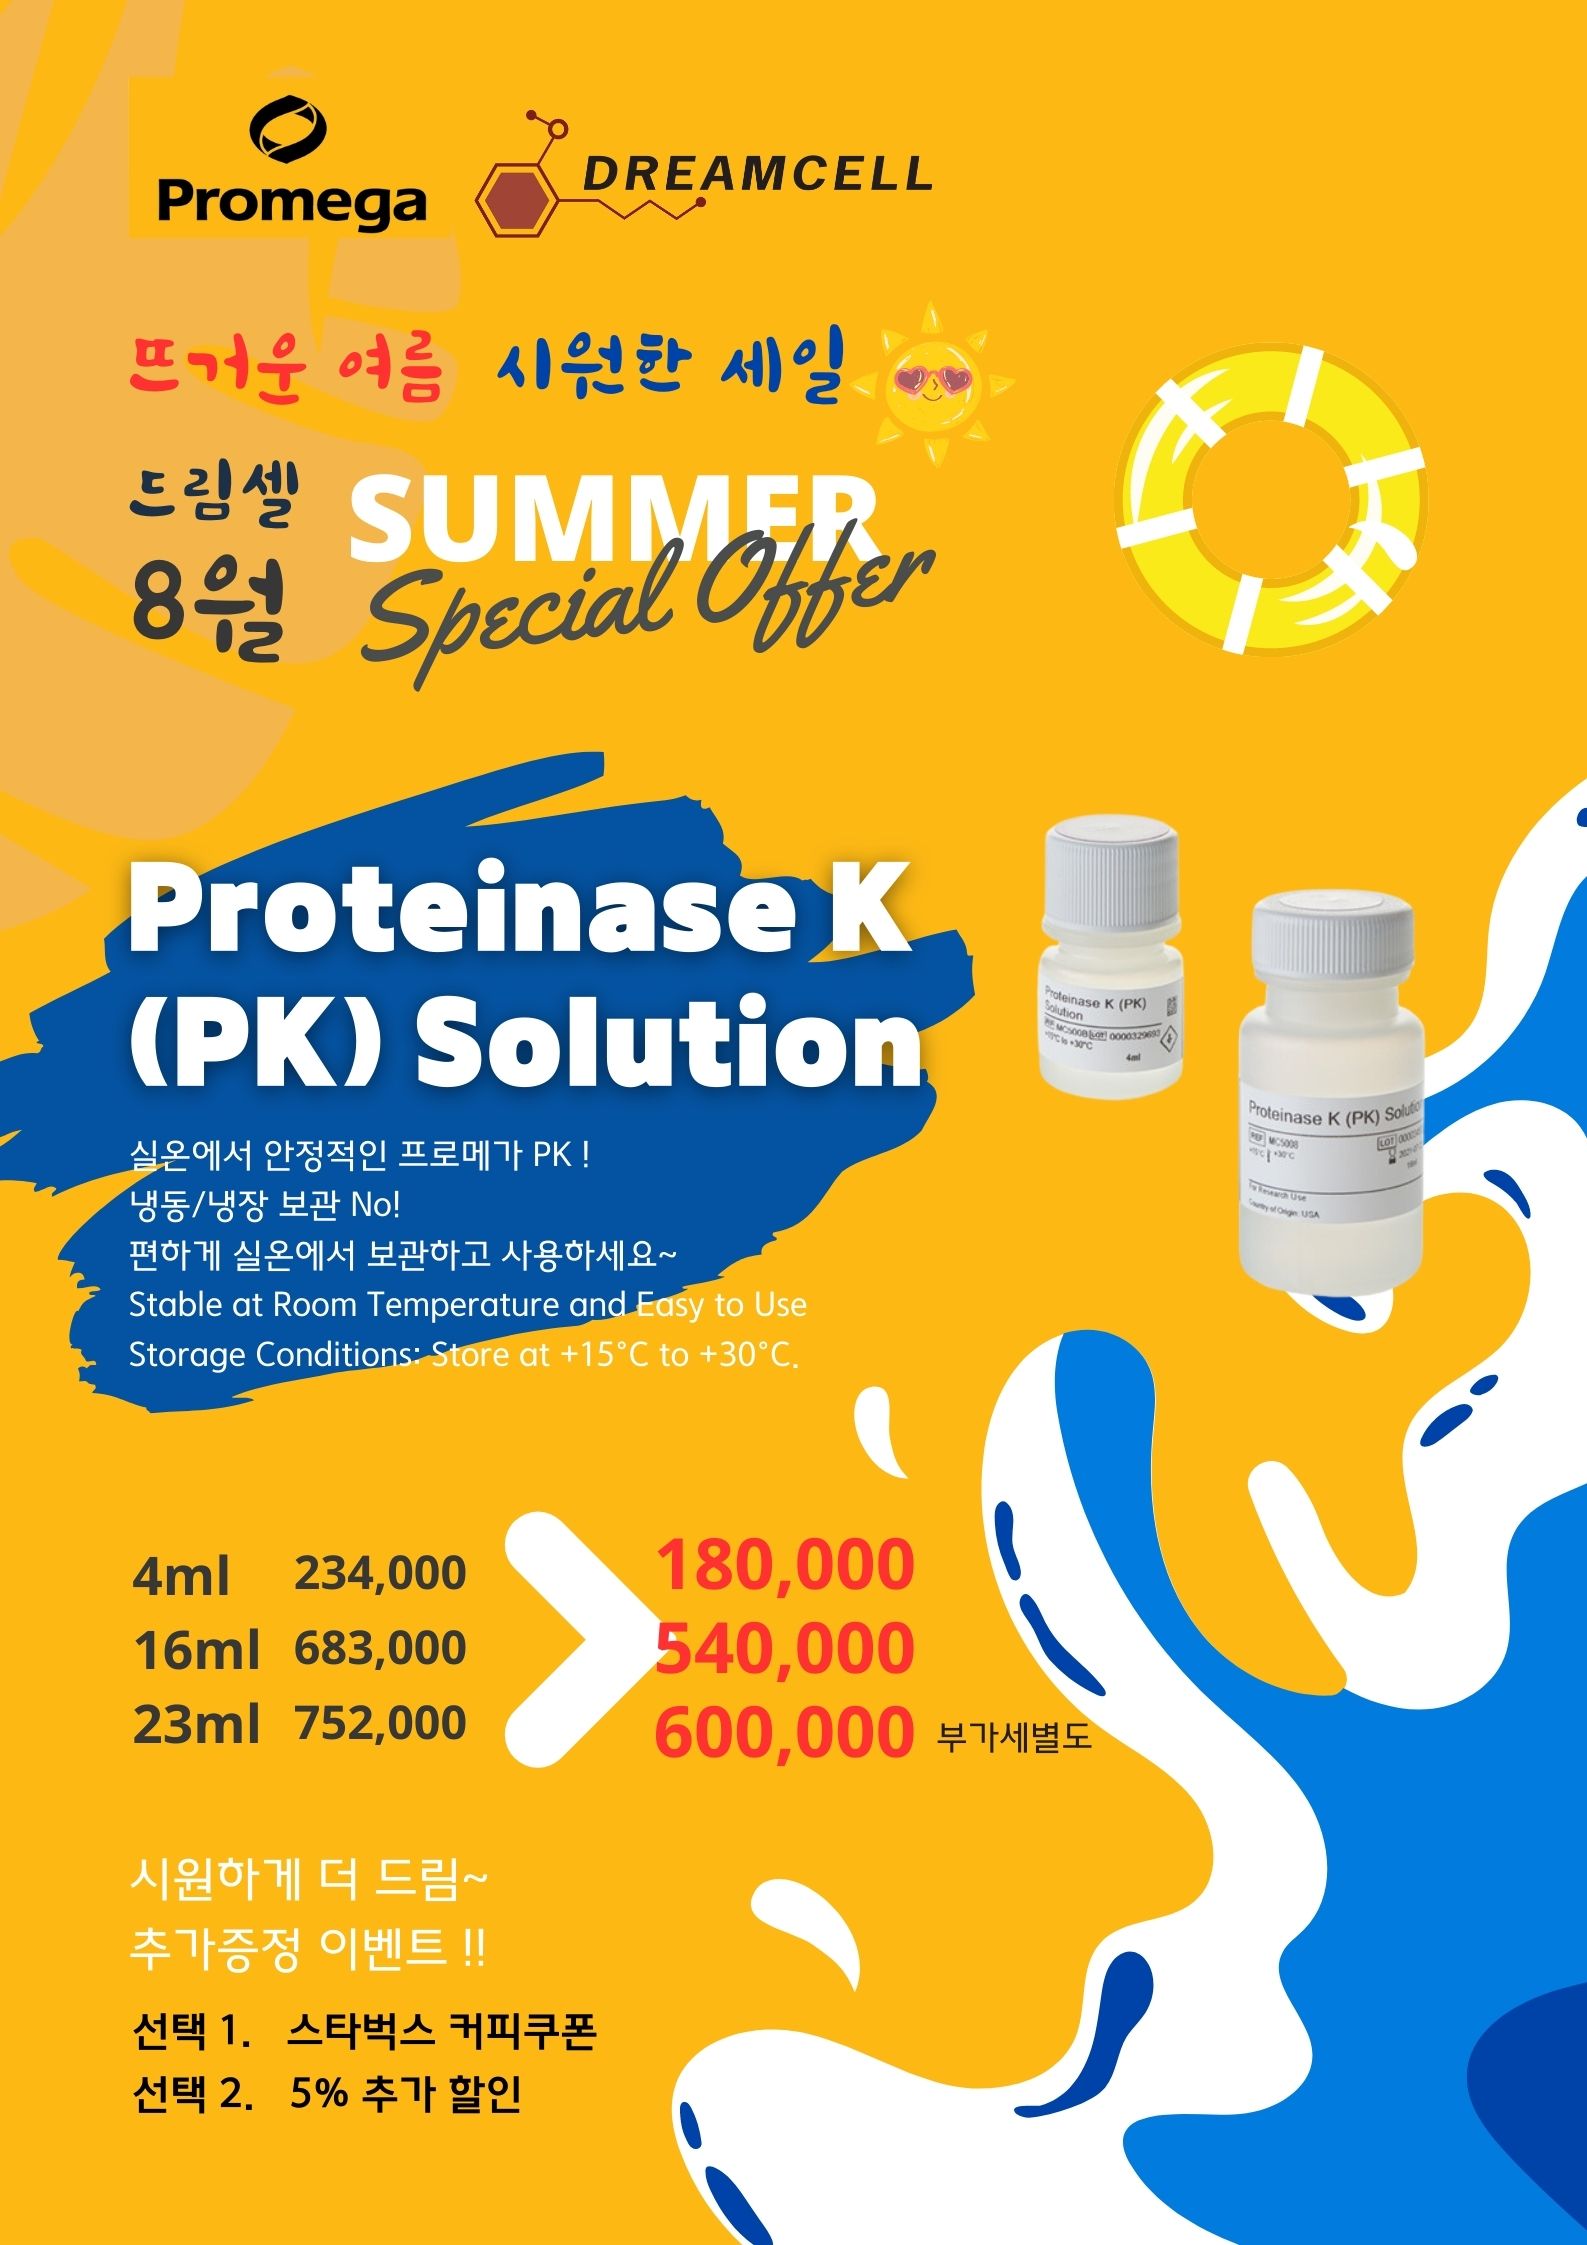 [종료] 프로메가 Proteinase K & Proetease inhibitor cocktail 할인